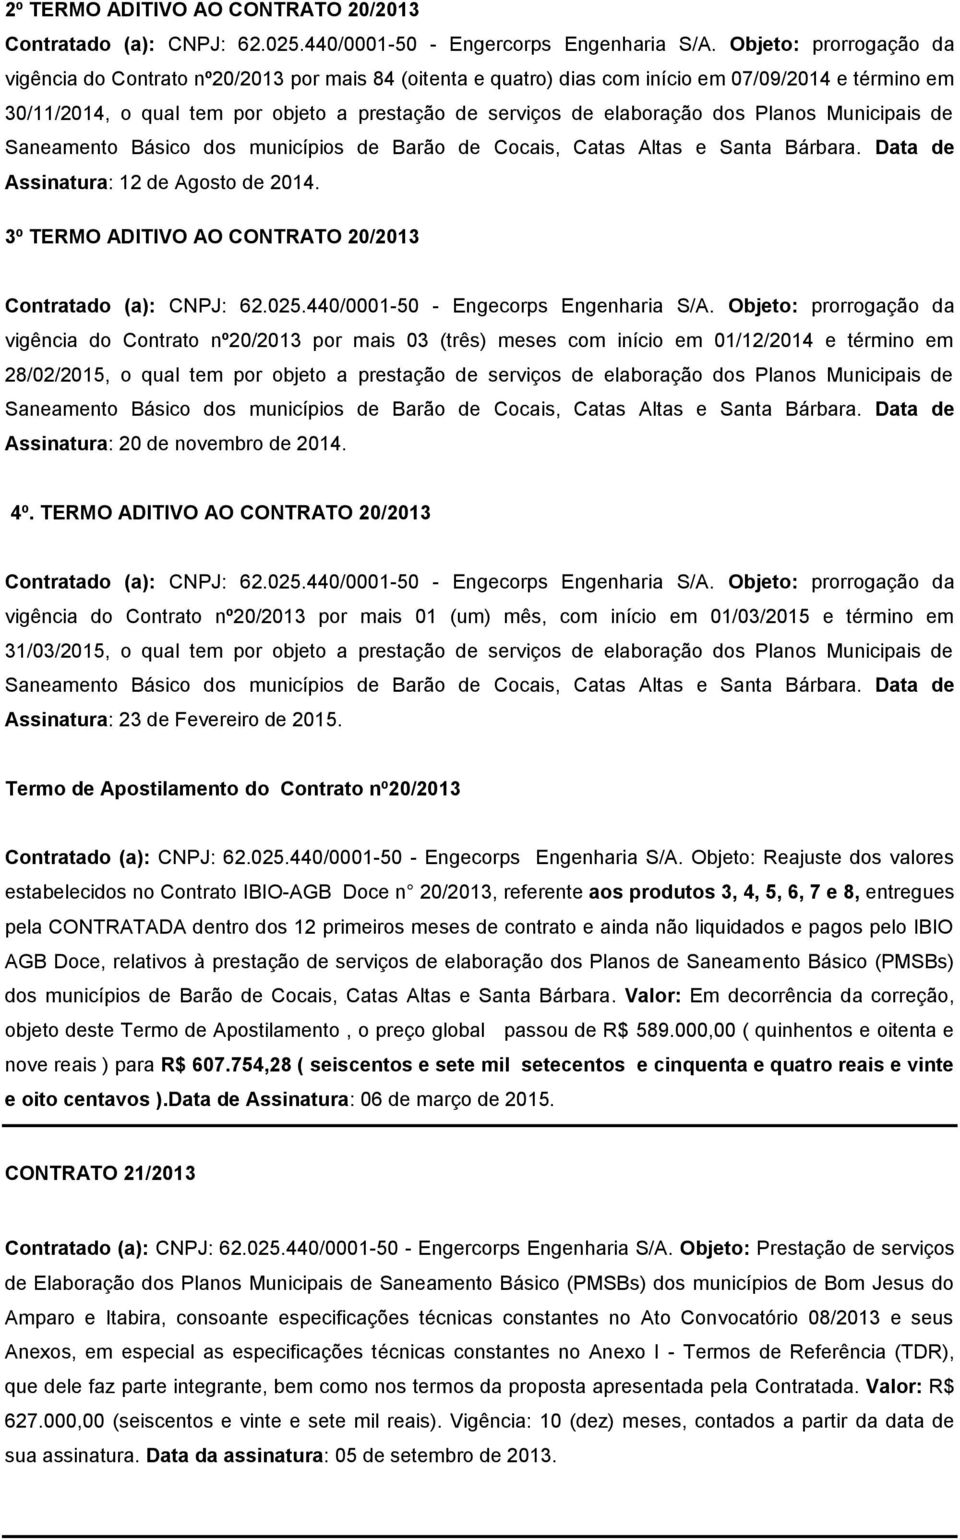 dos Planos Municipais de Saneamento Básico dos municípios de Barão de Cocais, Catas Altas e Santa Bárbara. Data de Assinatura: 12 de Agosto de 2014.